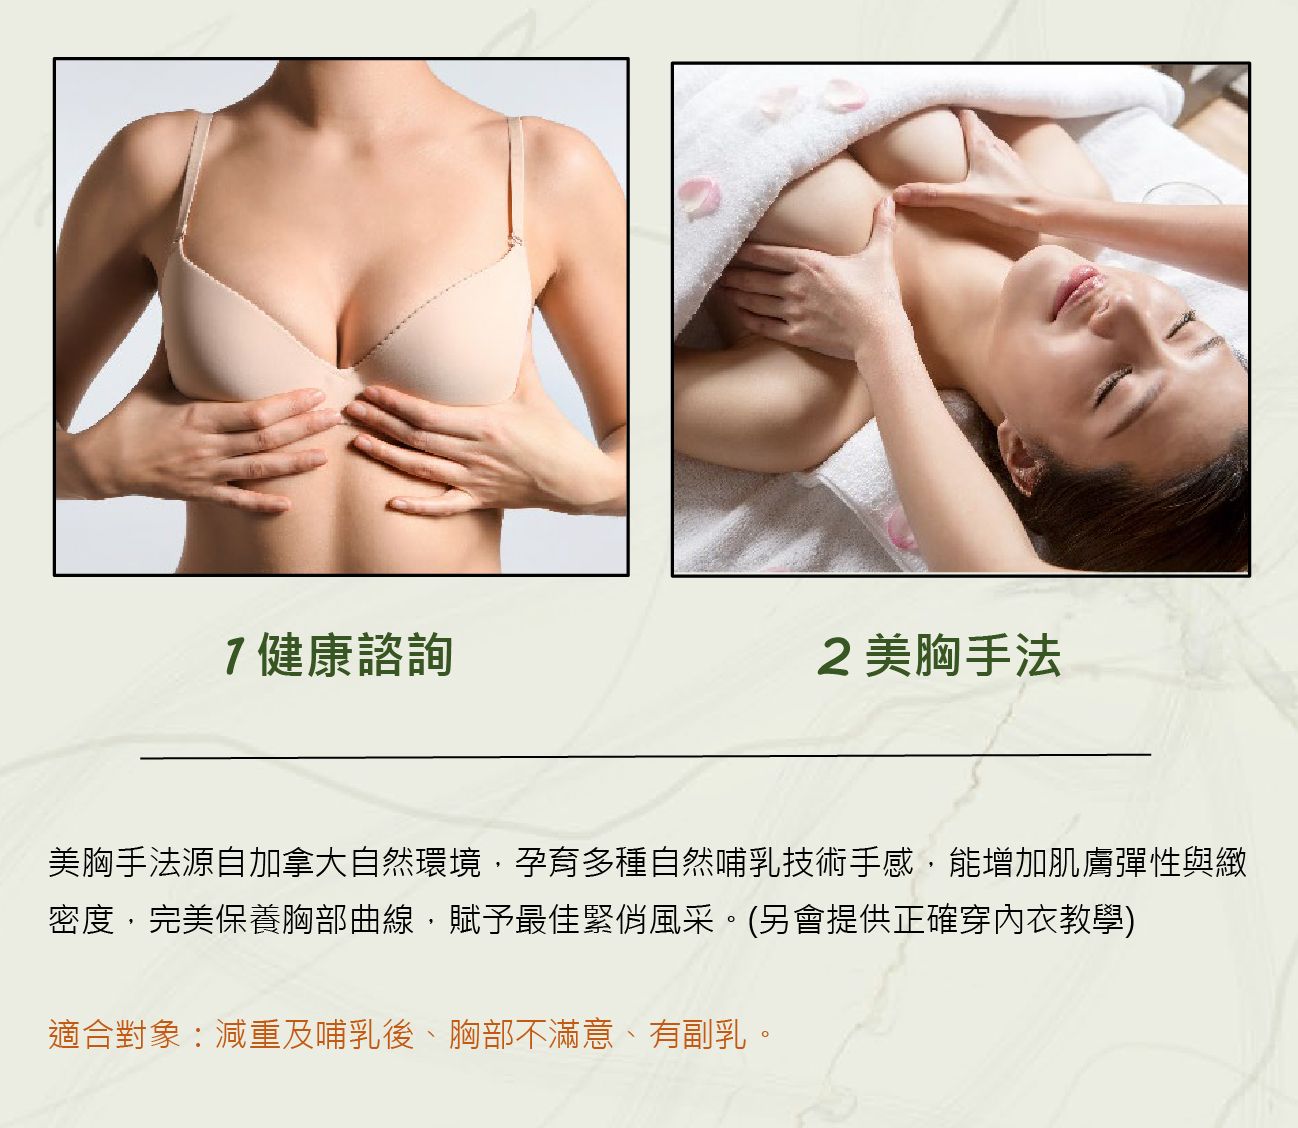 胸部美型彈性護理流程